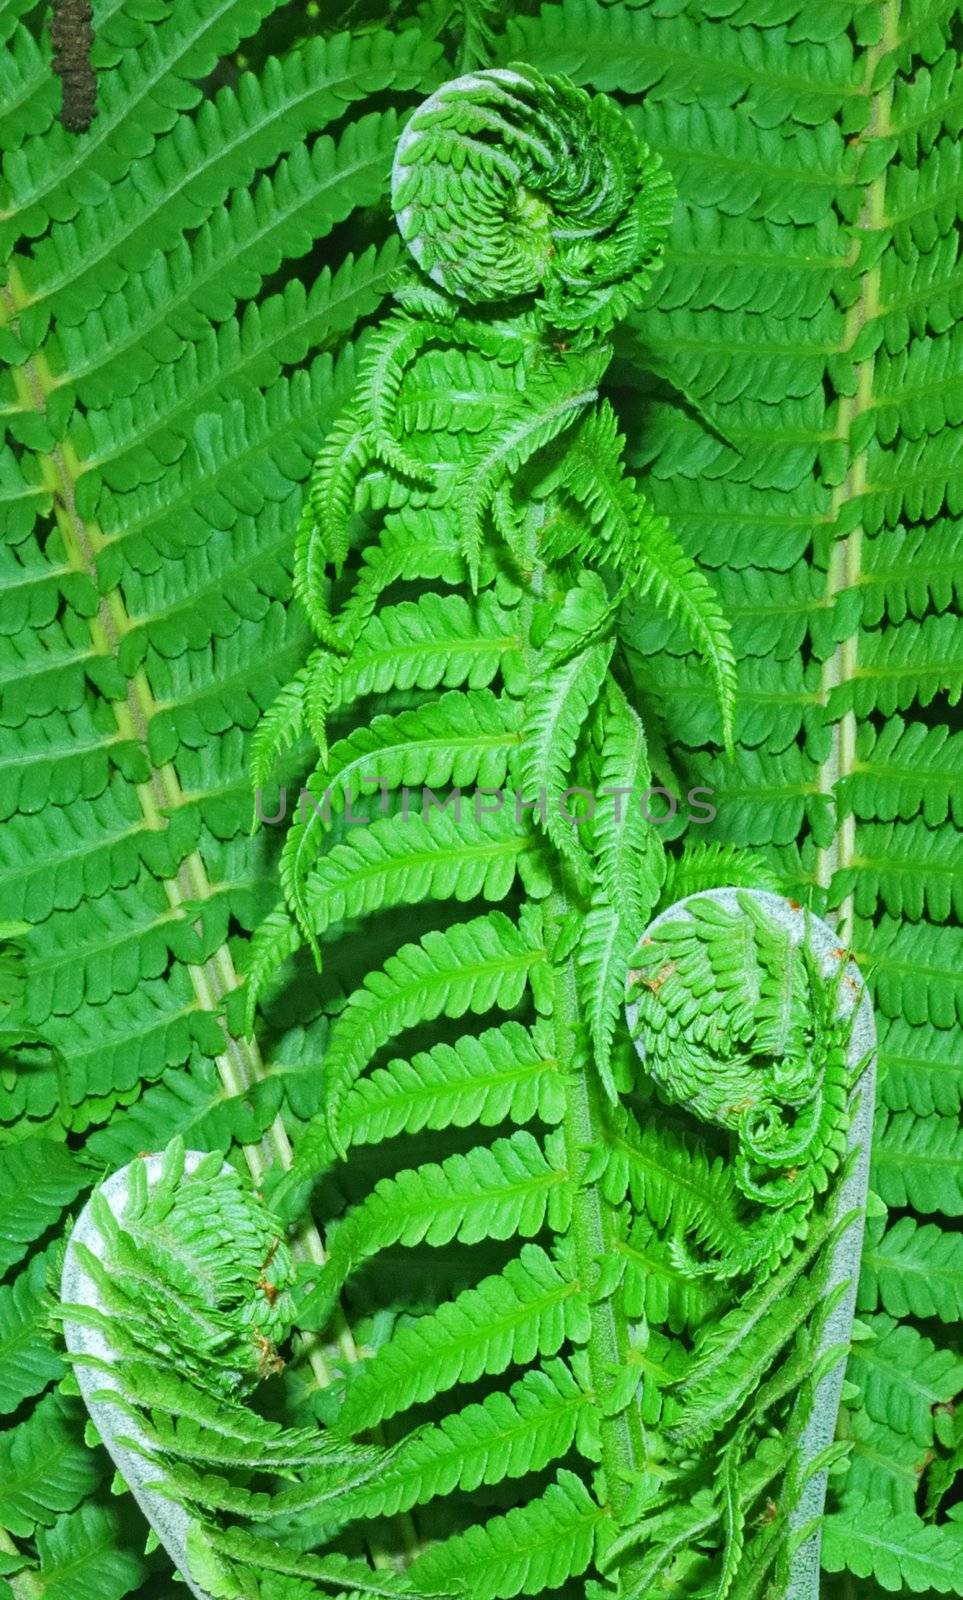 A baby fern leaf by Sergieiev